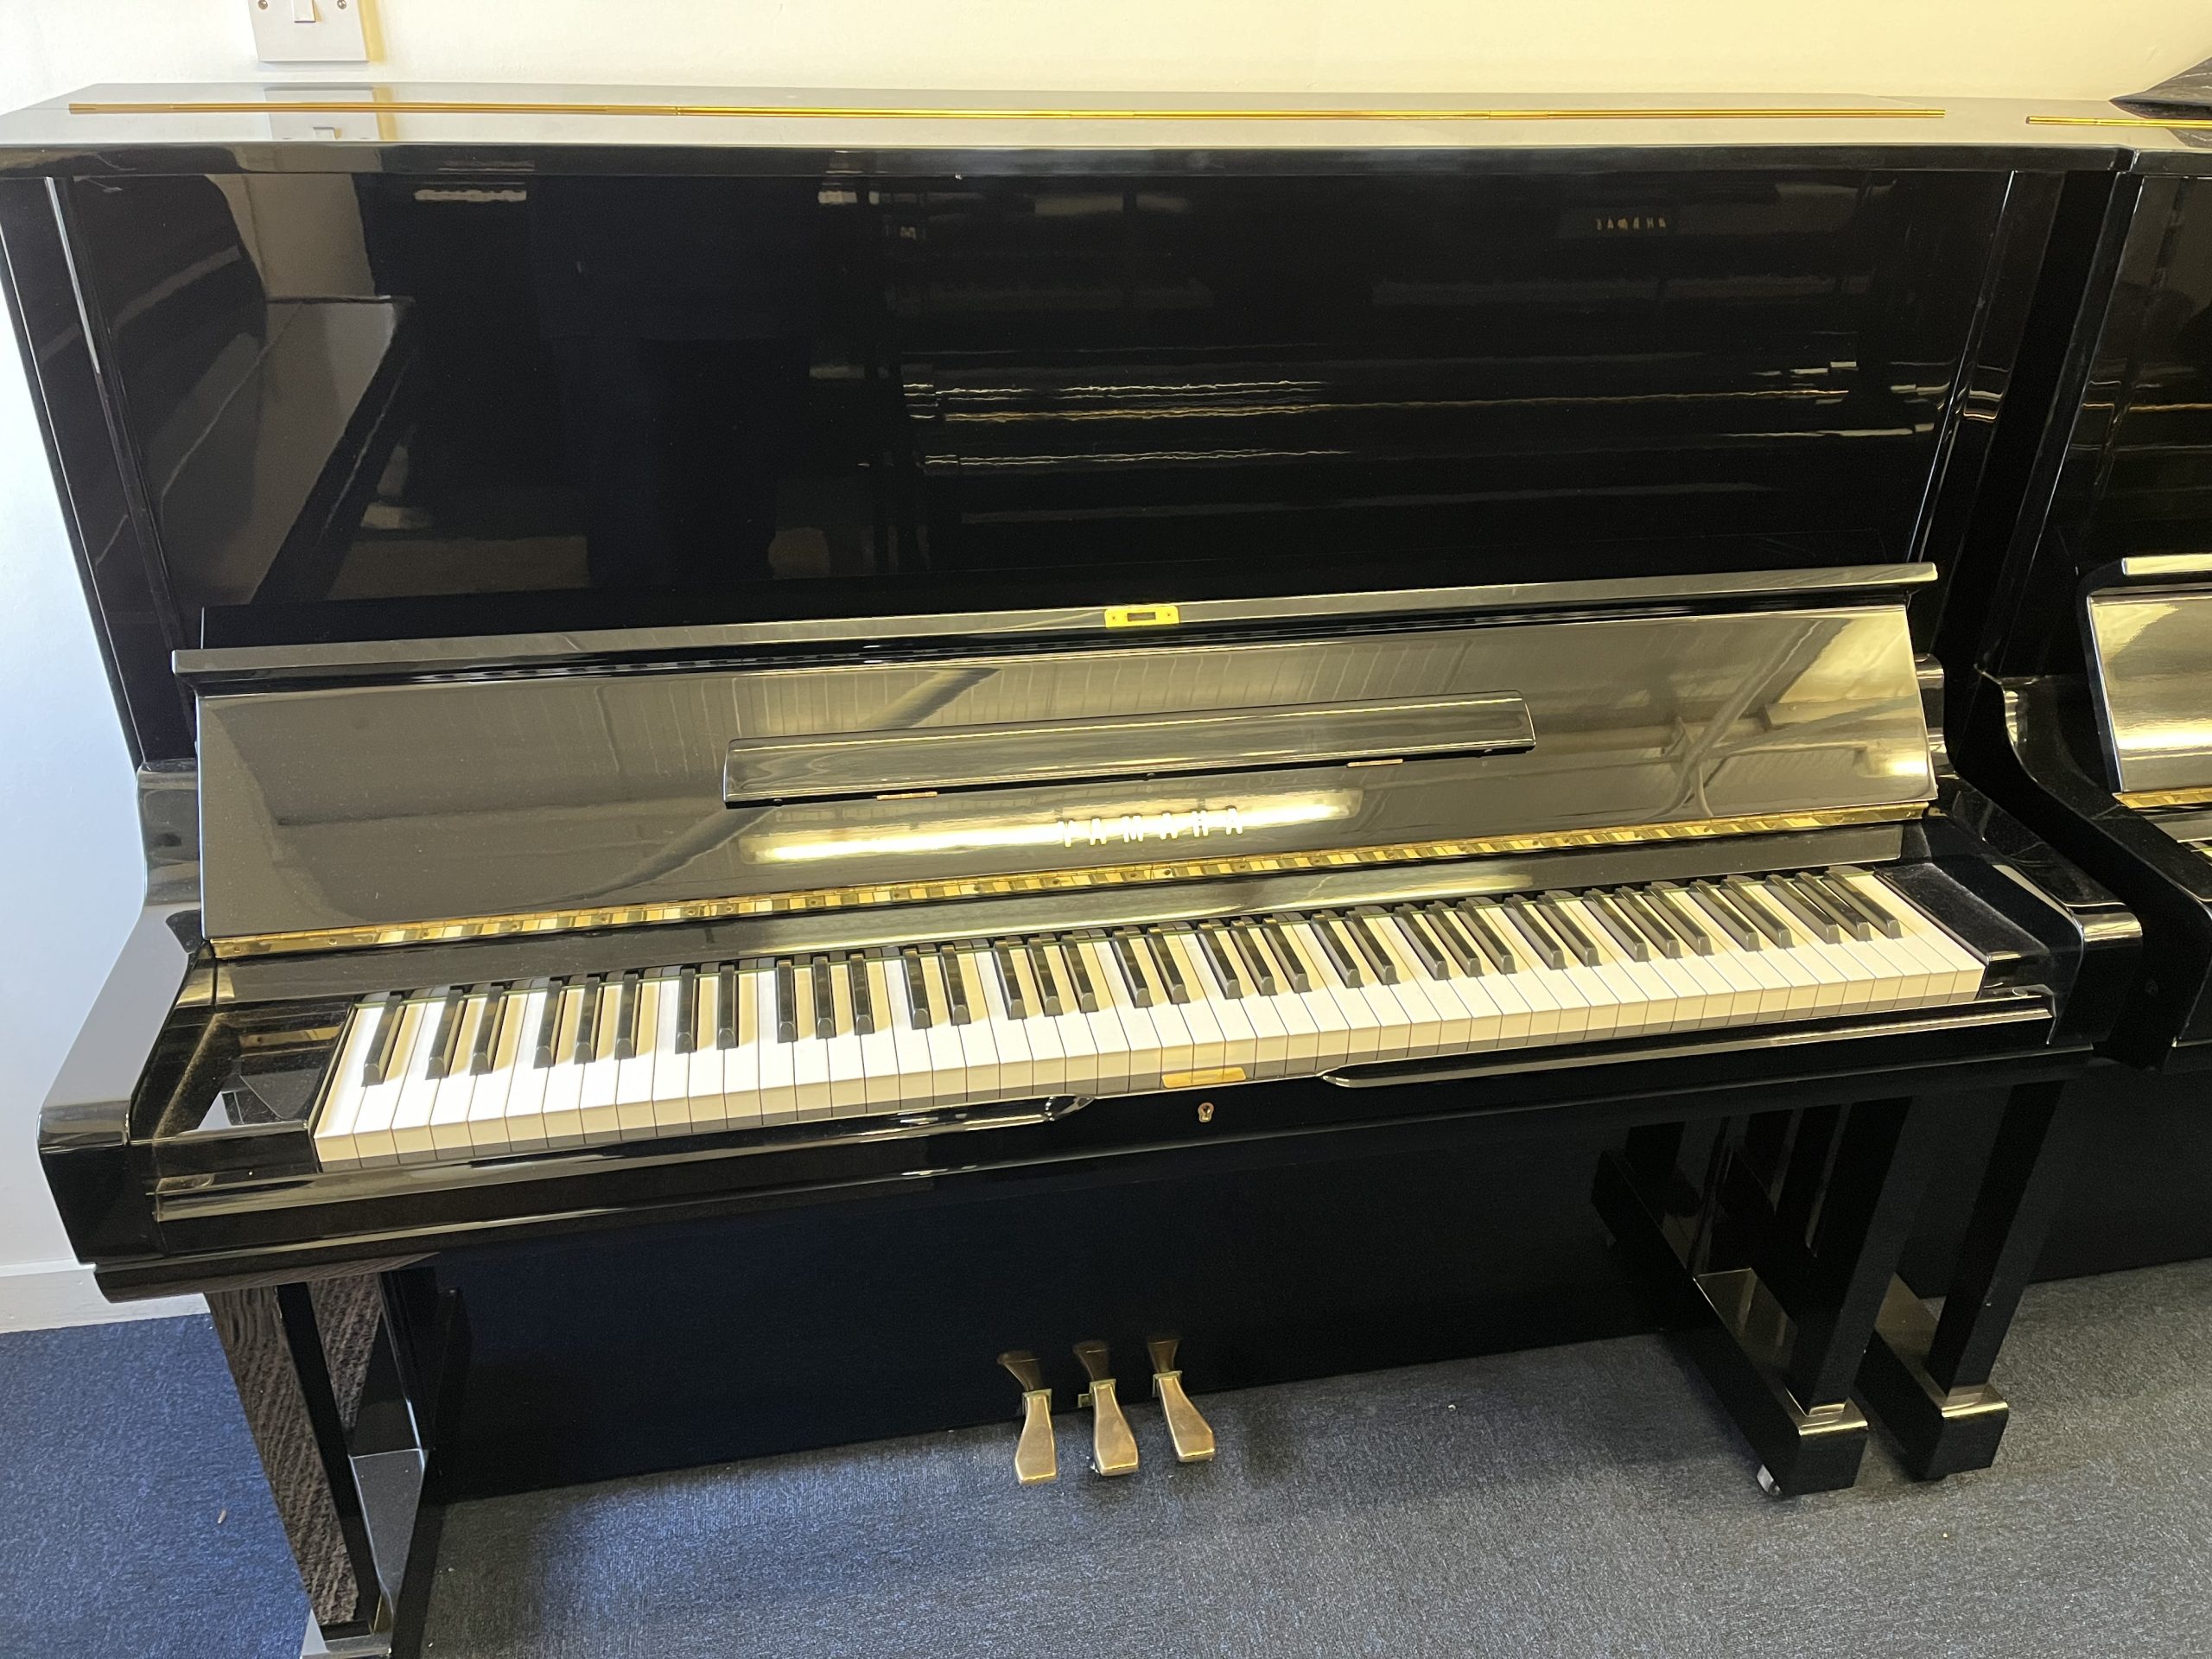 Yamaha U3 Upright Piano